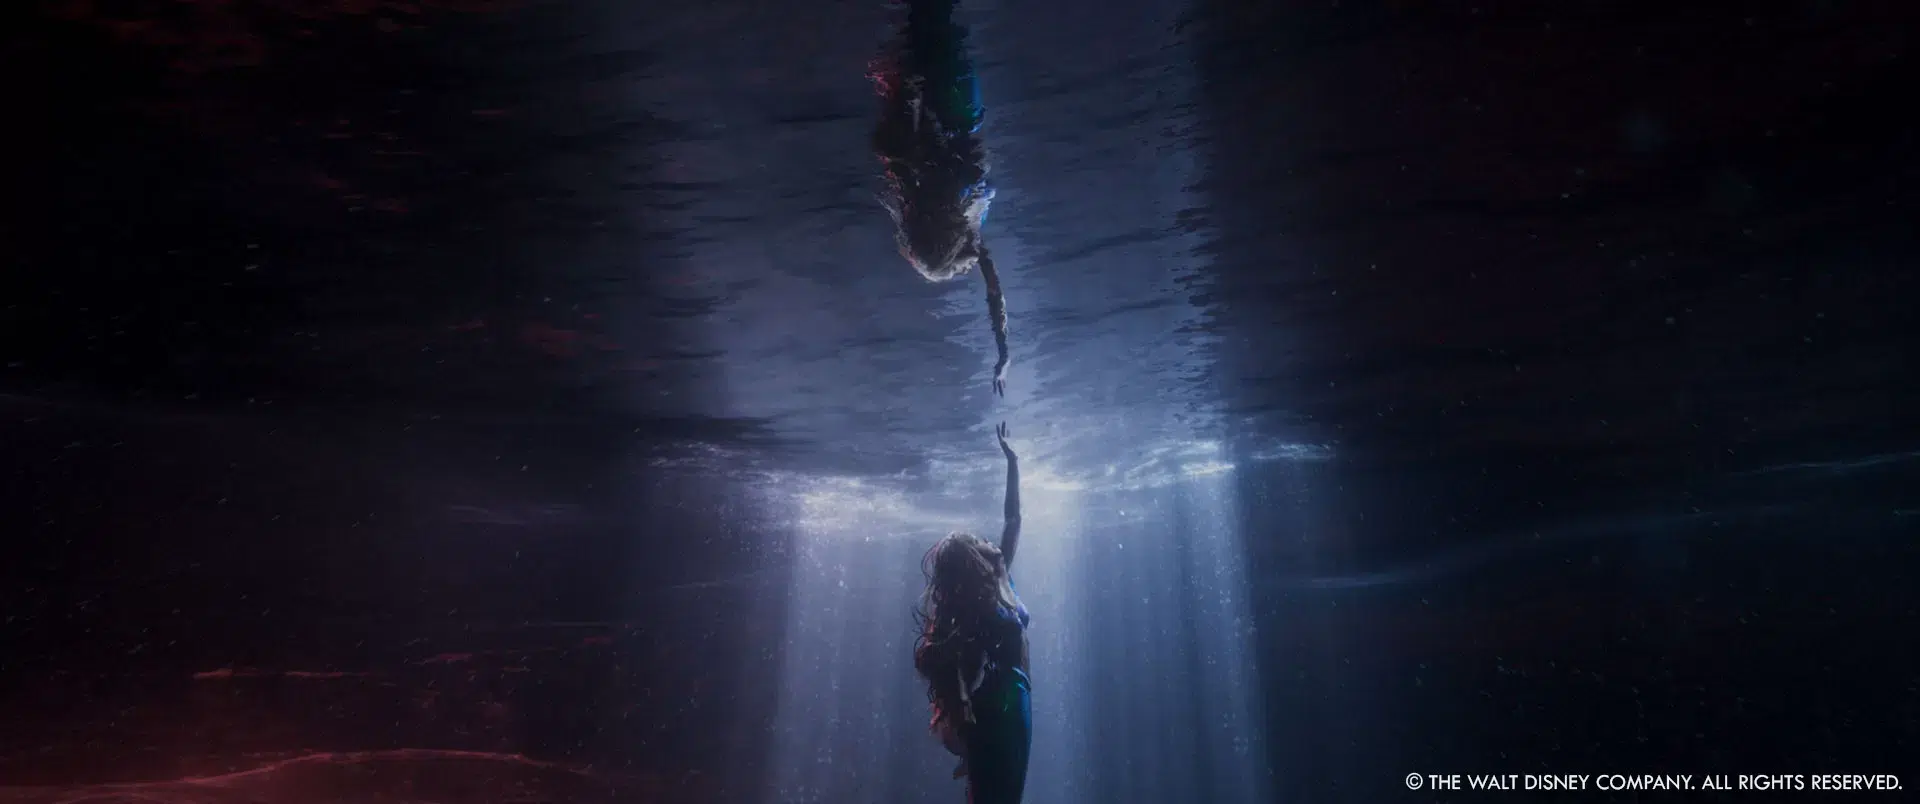 The Little Mermaid: Tim Burke - Production VFX Supervisor - The Art of VFX